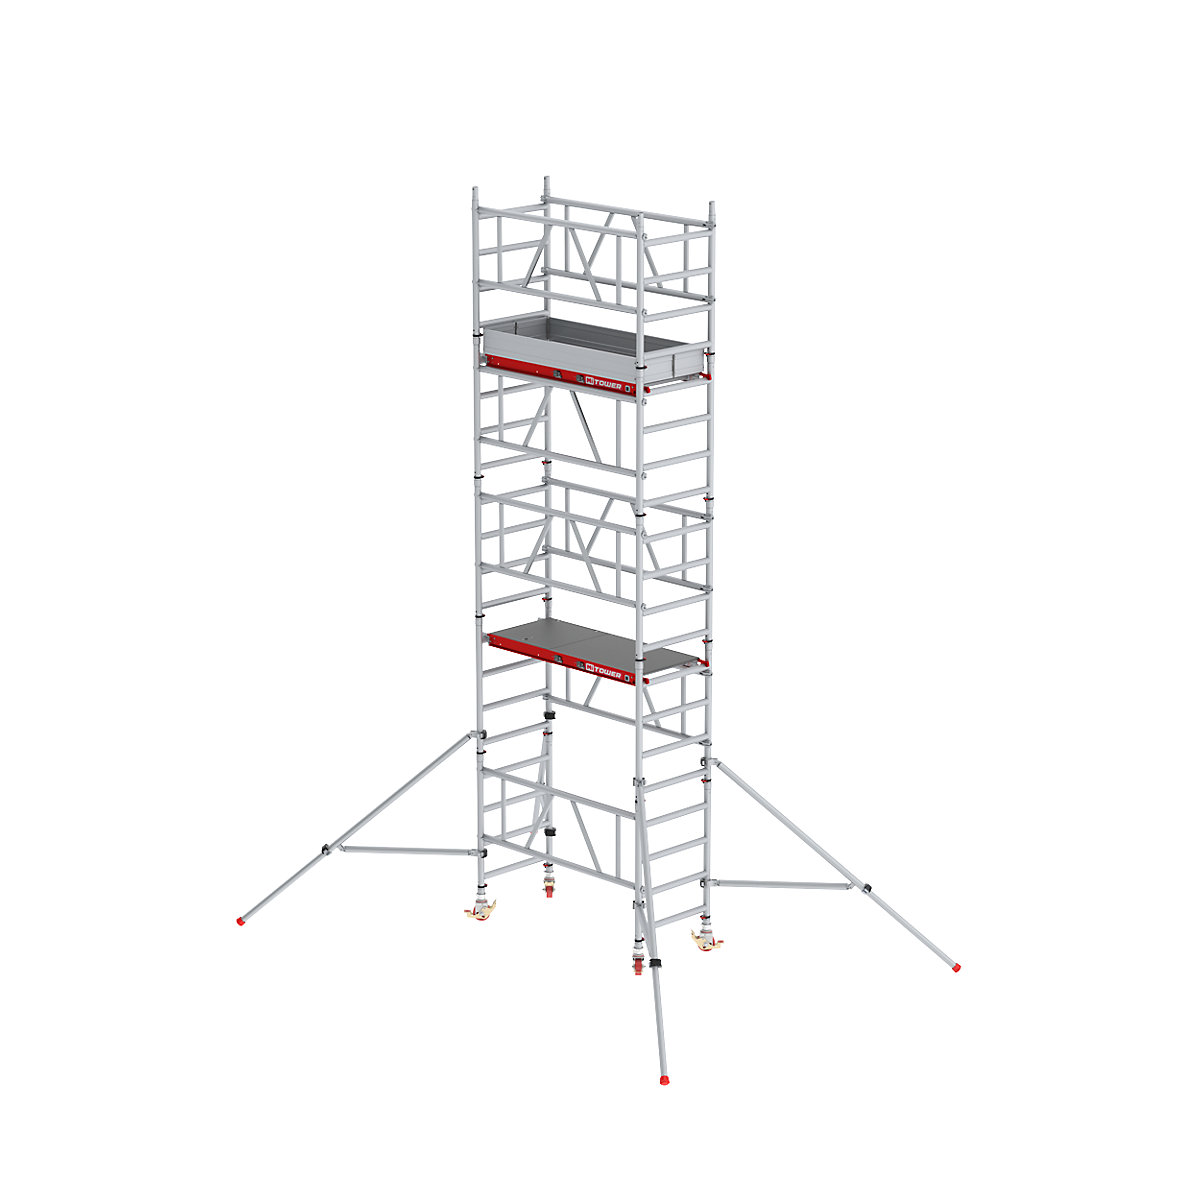 Hitro sestavljiv pomični oder MiTOWER Plus – Altrex, ploščad Fiber-Deck®, delovna višina 6 m